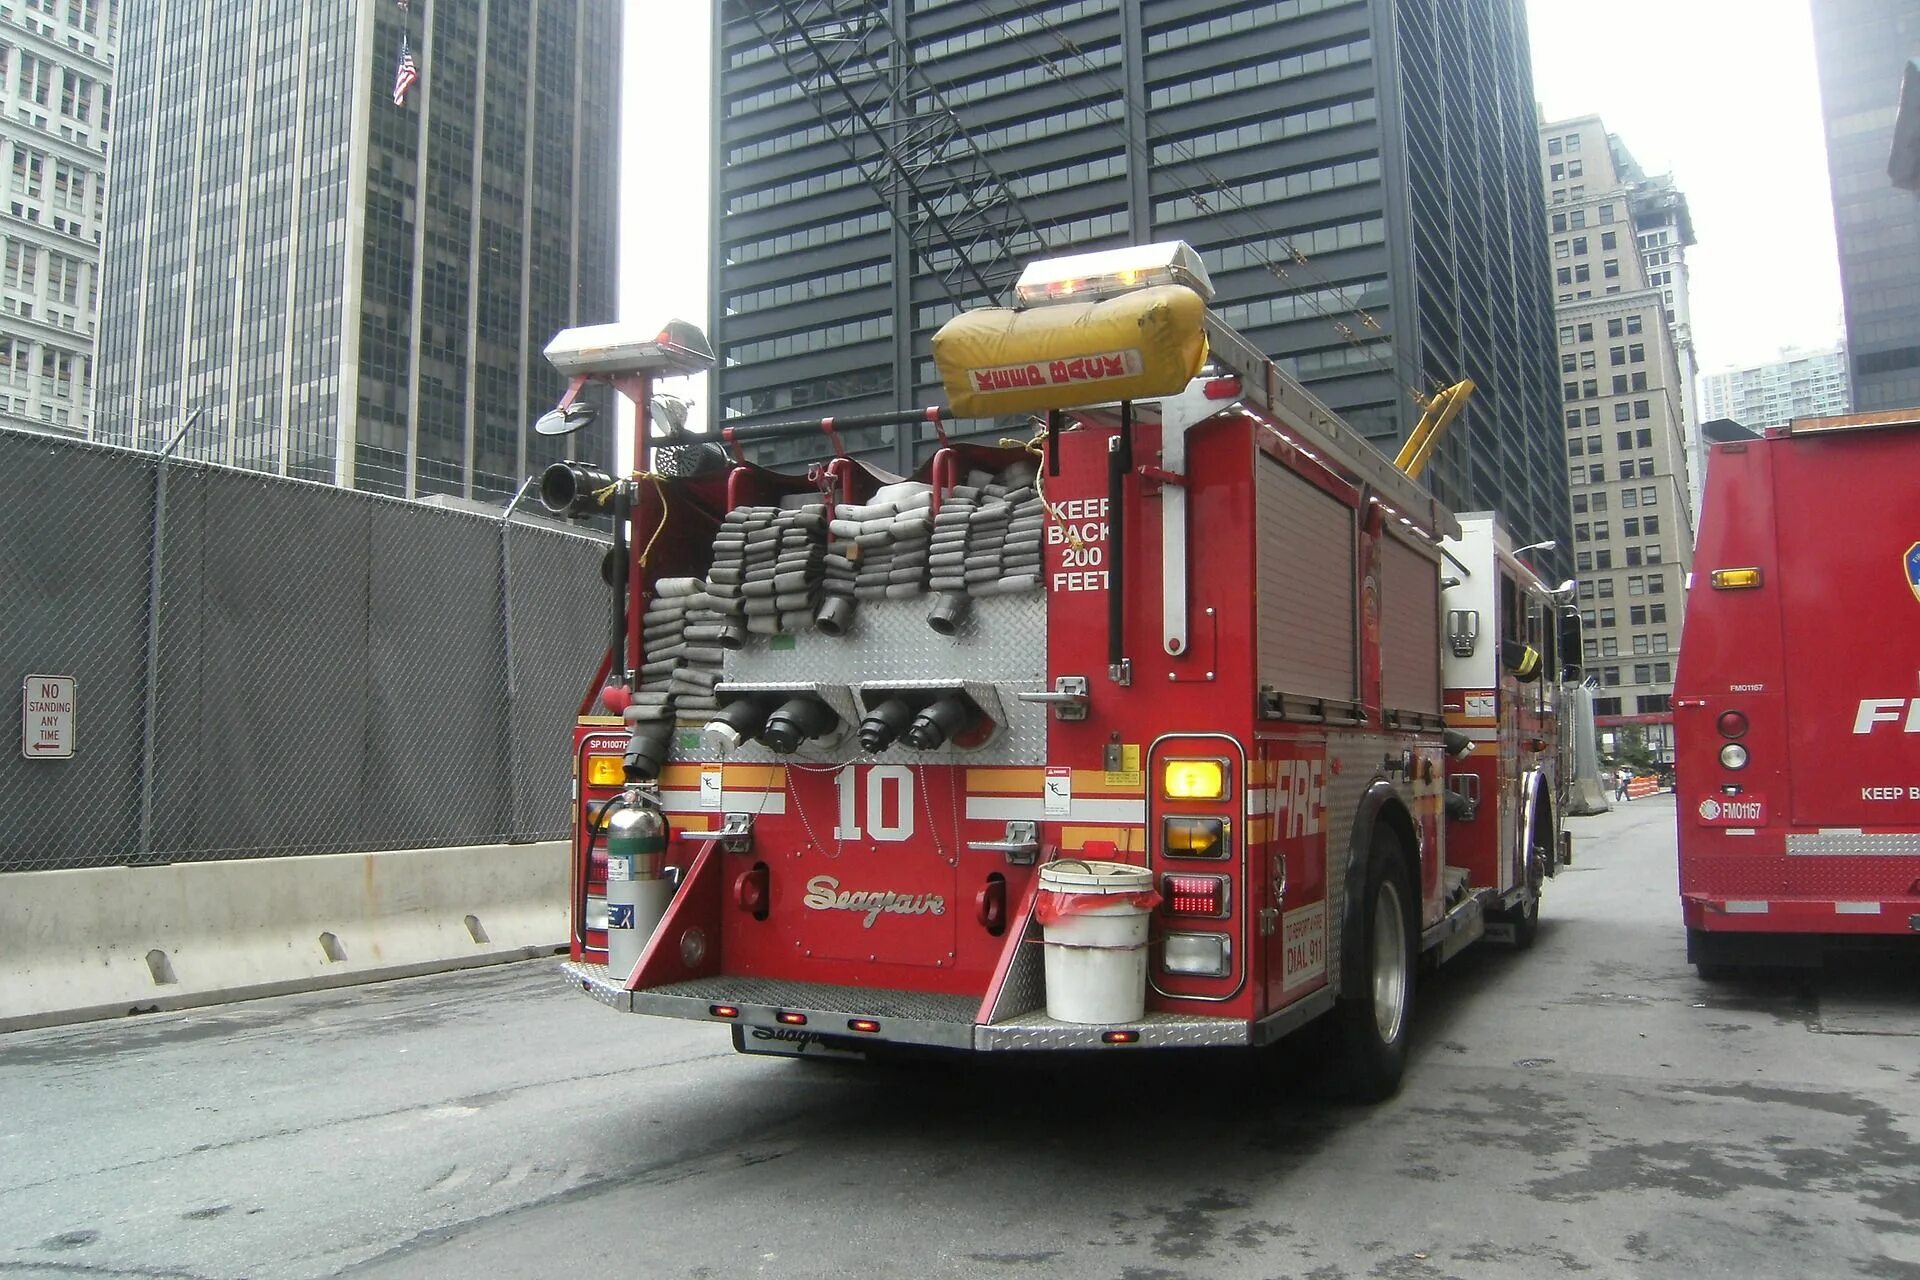 Посадка пожарных в автомобиль. Машина "Fire Truck" пожарная, 49450. Пожарная часть Нью-Йорка. Пожарная машина Нью-Йорка. Нью йоркские пожарные машины.